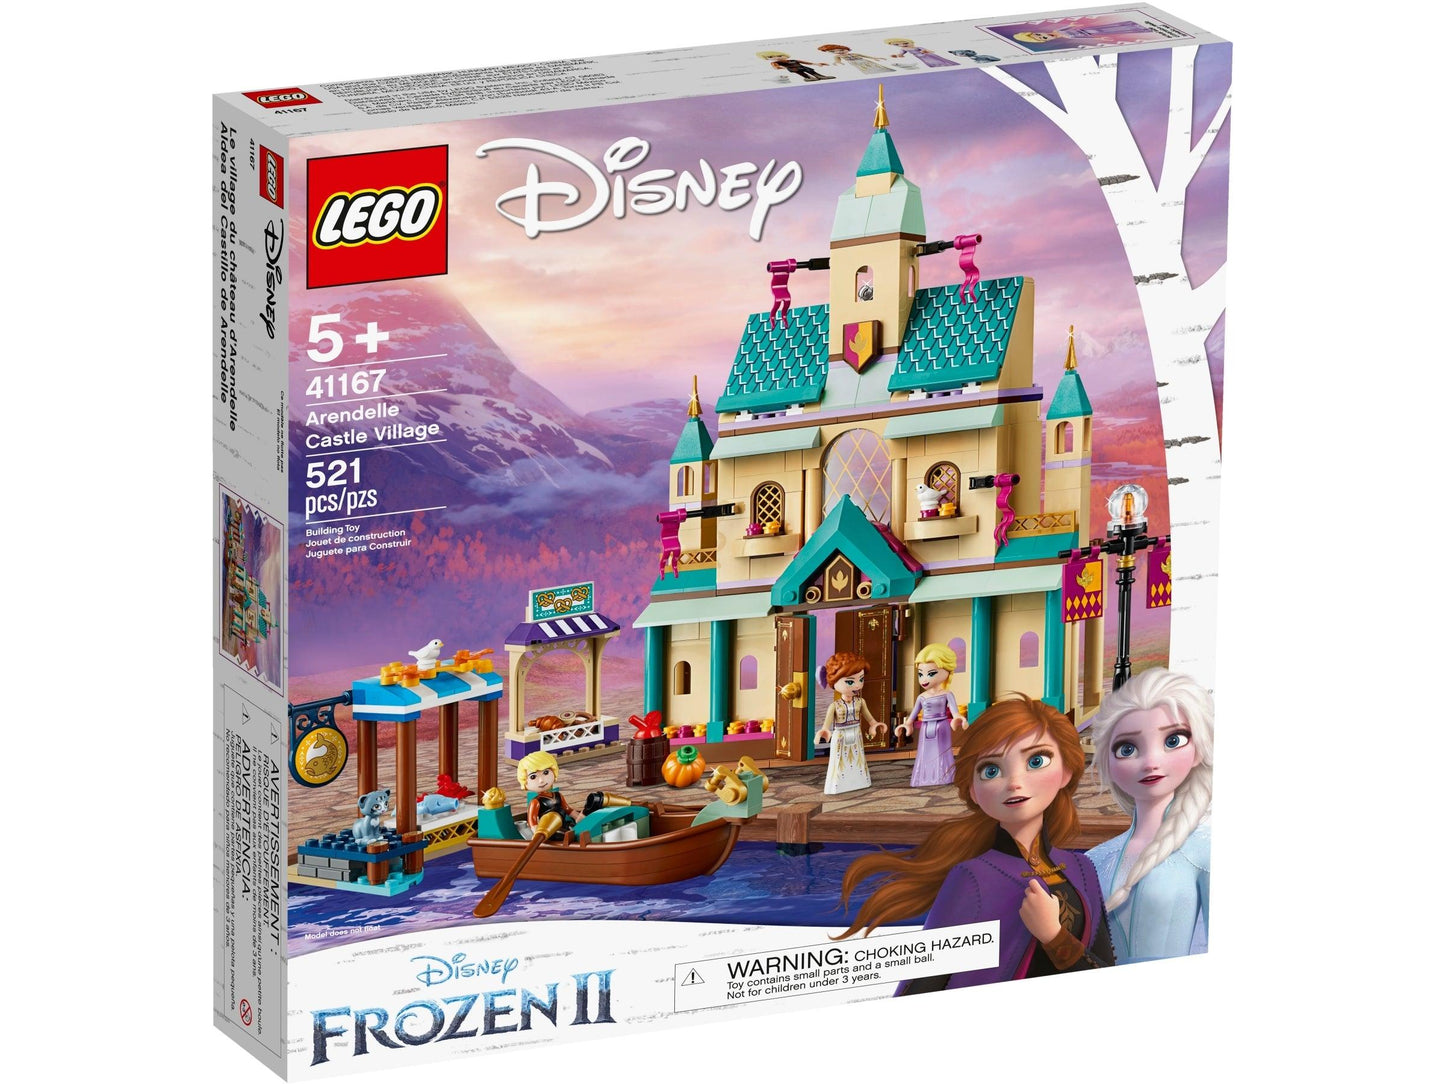 LEGO Frozen Het magische kasteel van Arendelle 41167 Disney LEGO DISNEY FROZEN @ 2TTOYS LEGO €. 69.99